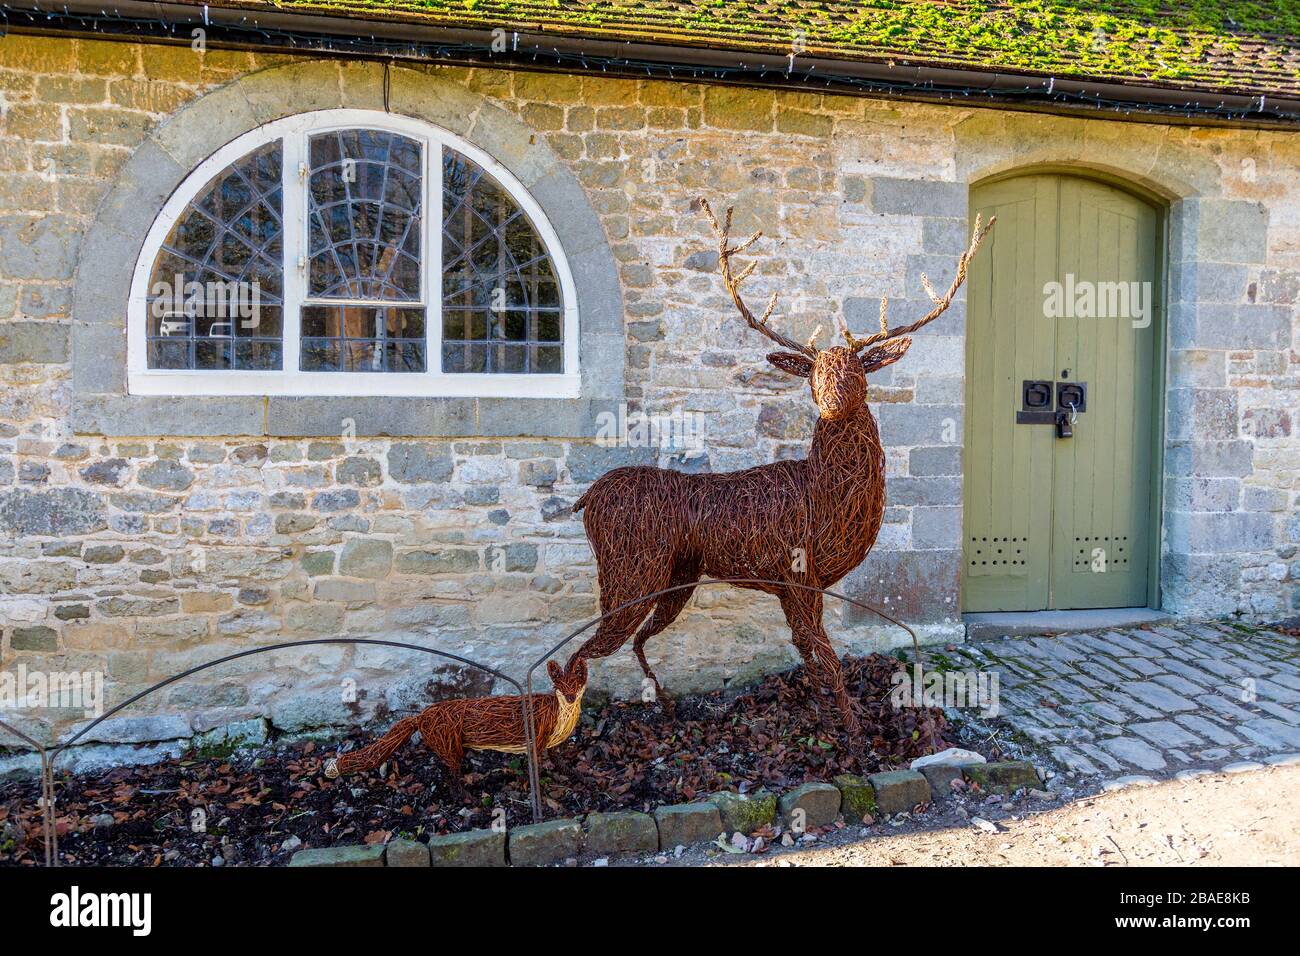 Sculptures réalistes de saules d'un cerf rouge et d'un renard dans la cour stable de Stourhead House; Wiltshire; Angleterre; Royaume-Uni Banque D'Images